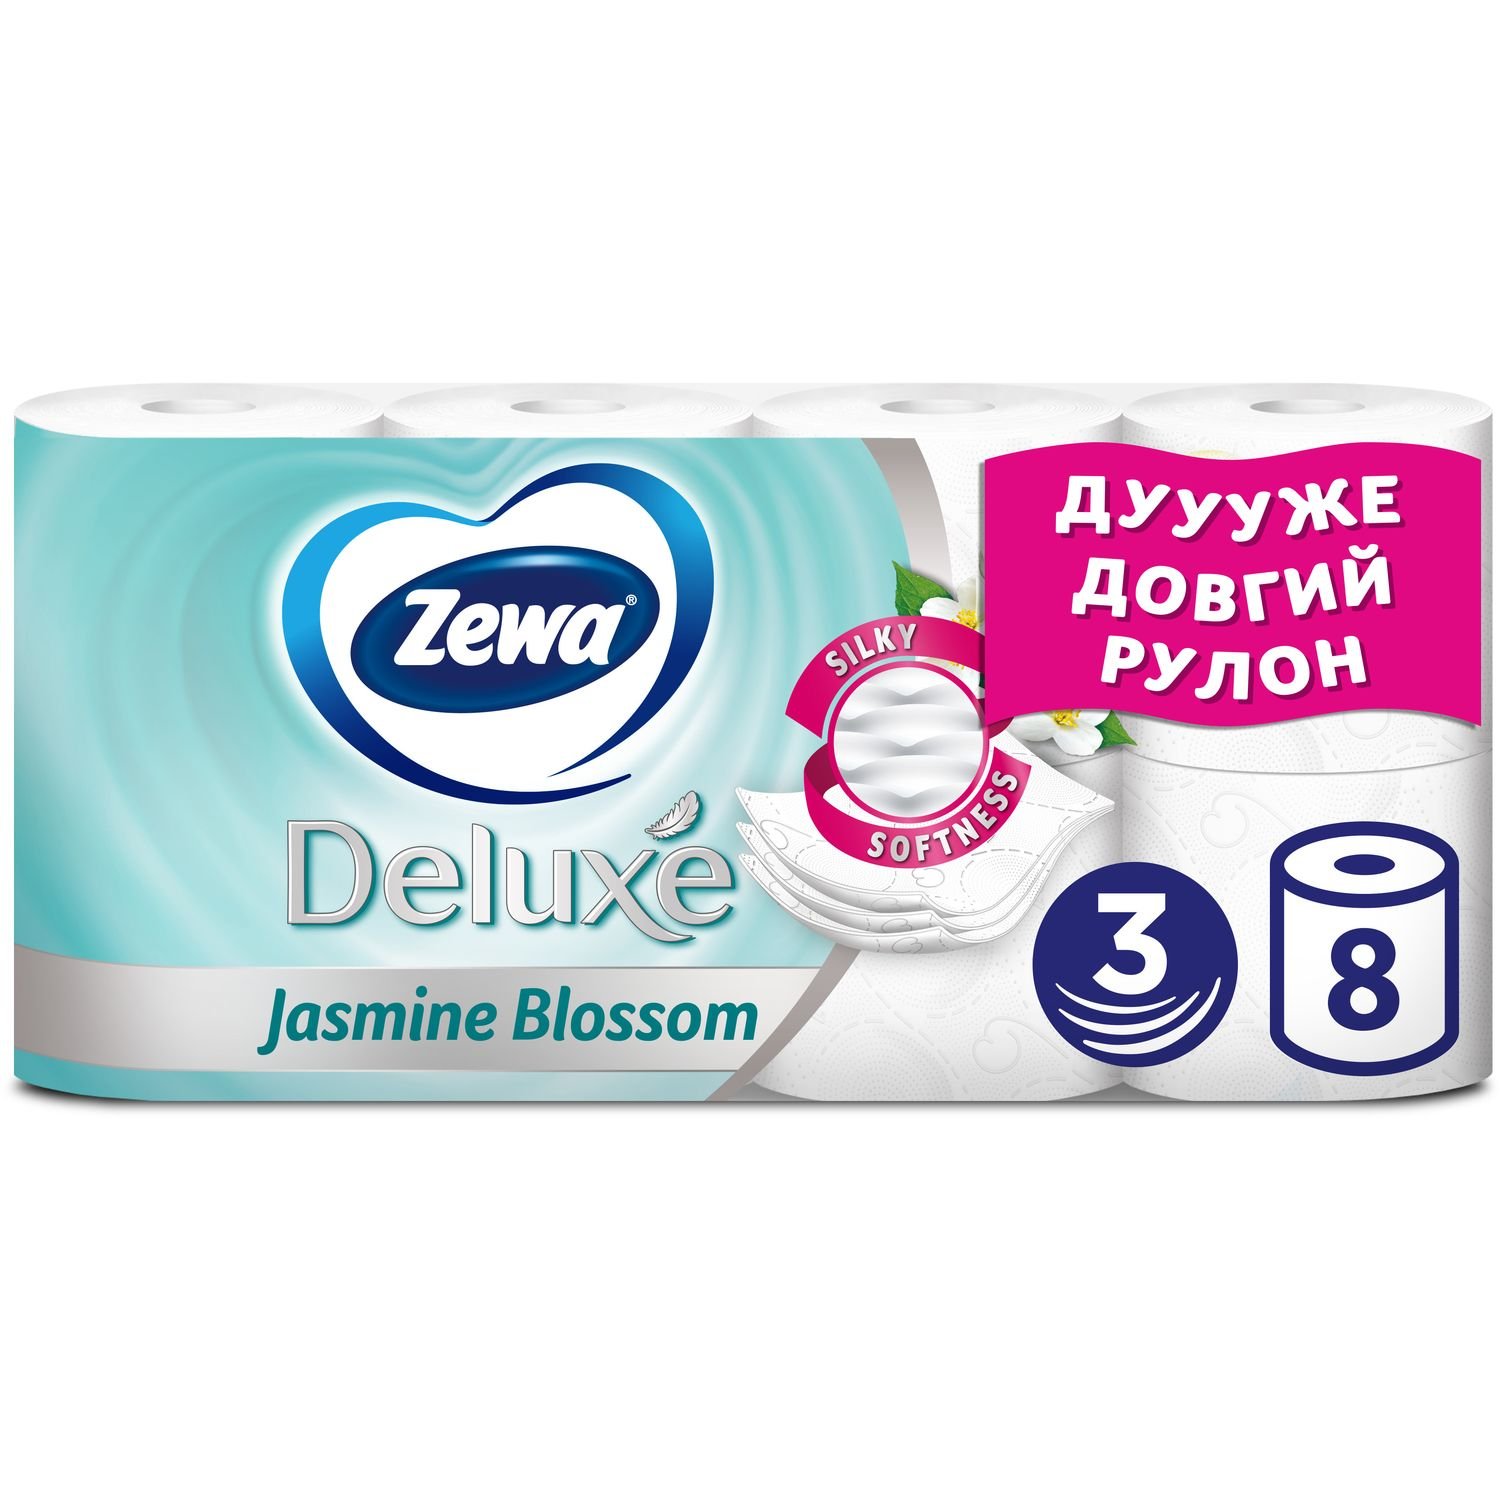 Туалетная бумага Zewa Deluxe Жасмин, трехслойная, 8 рулонов - фото 1